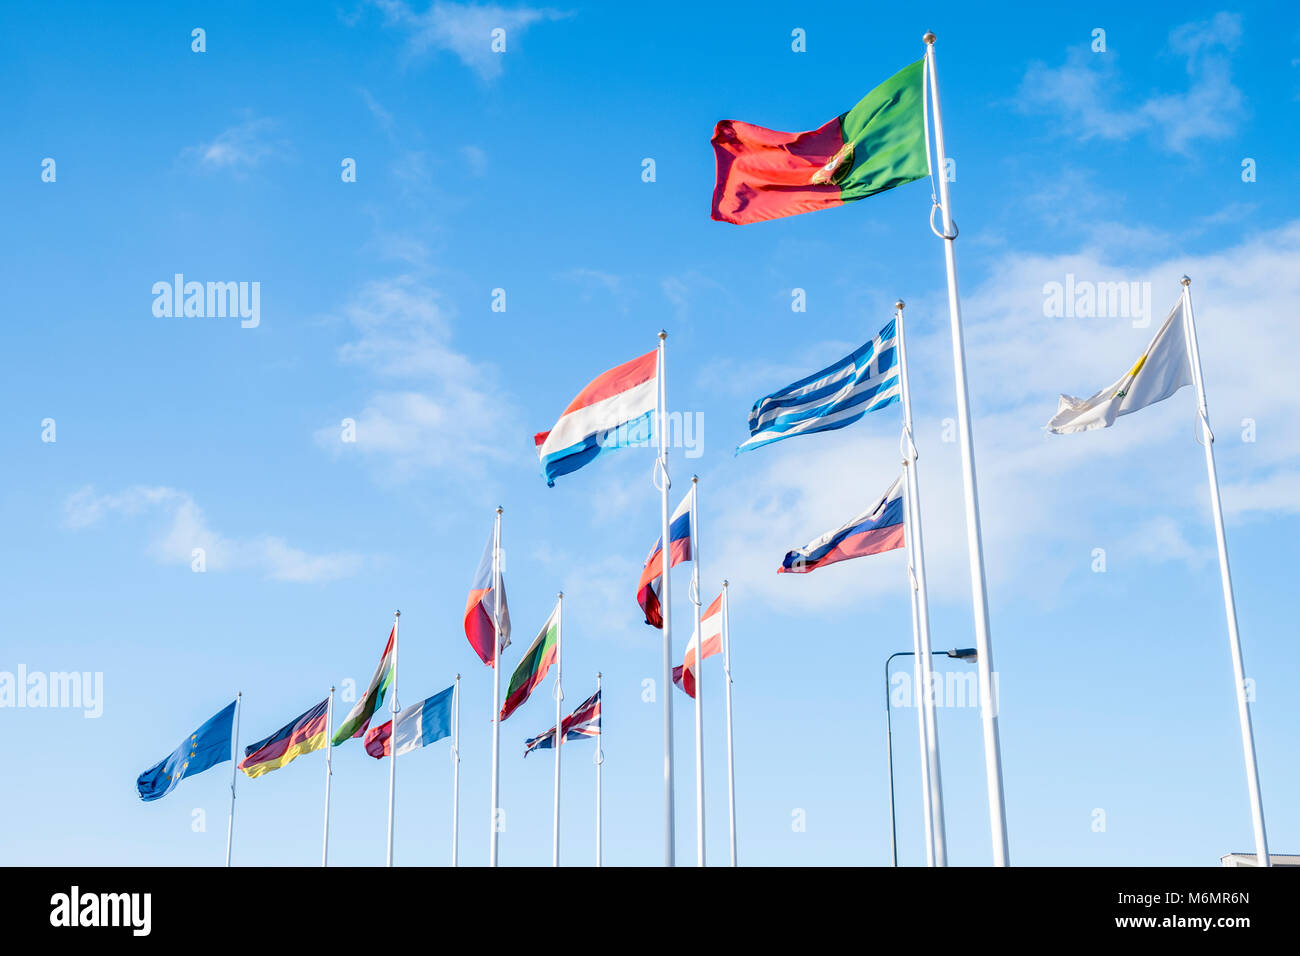 EU-Flaggen. Viele Fahnen der verschiedenen Nationen der Europäischen Union im Wind vor blauem Himmel, Hull, England, Großbritannien Stockfoto